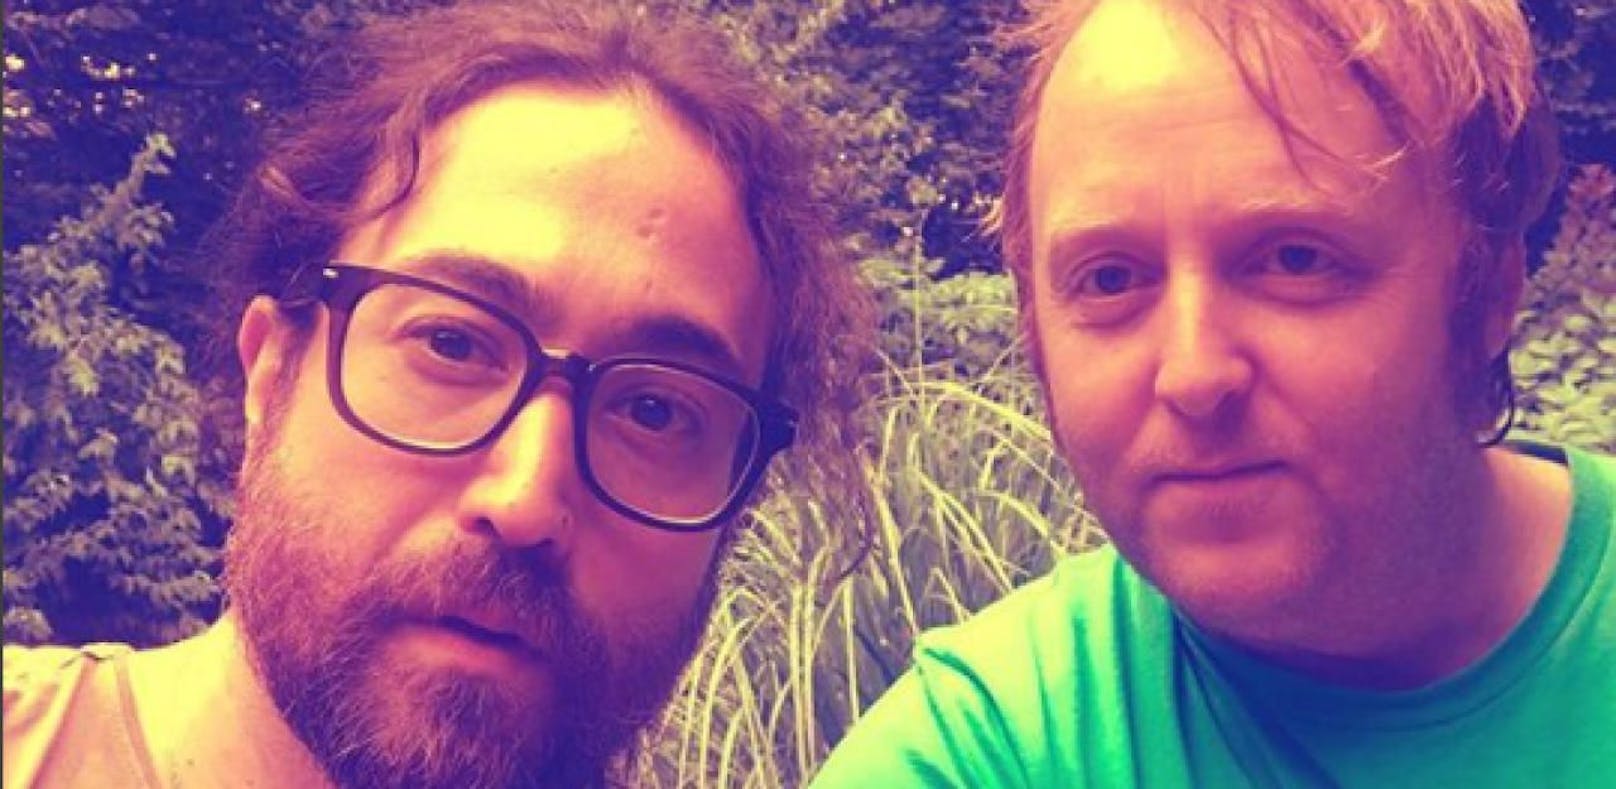 Das ist das erste Selfie von Lennon und McCartney